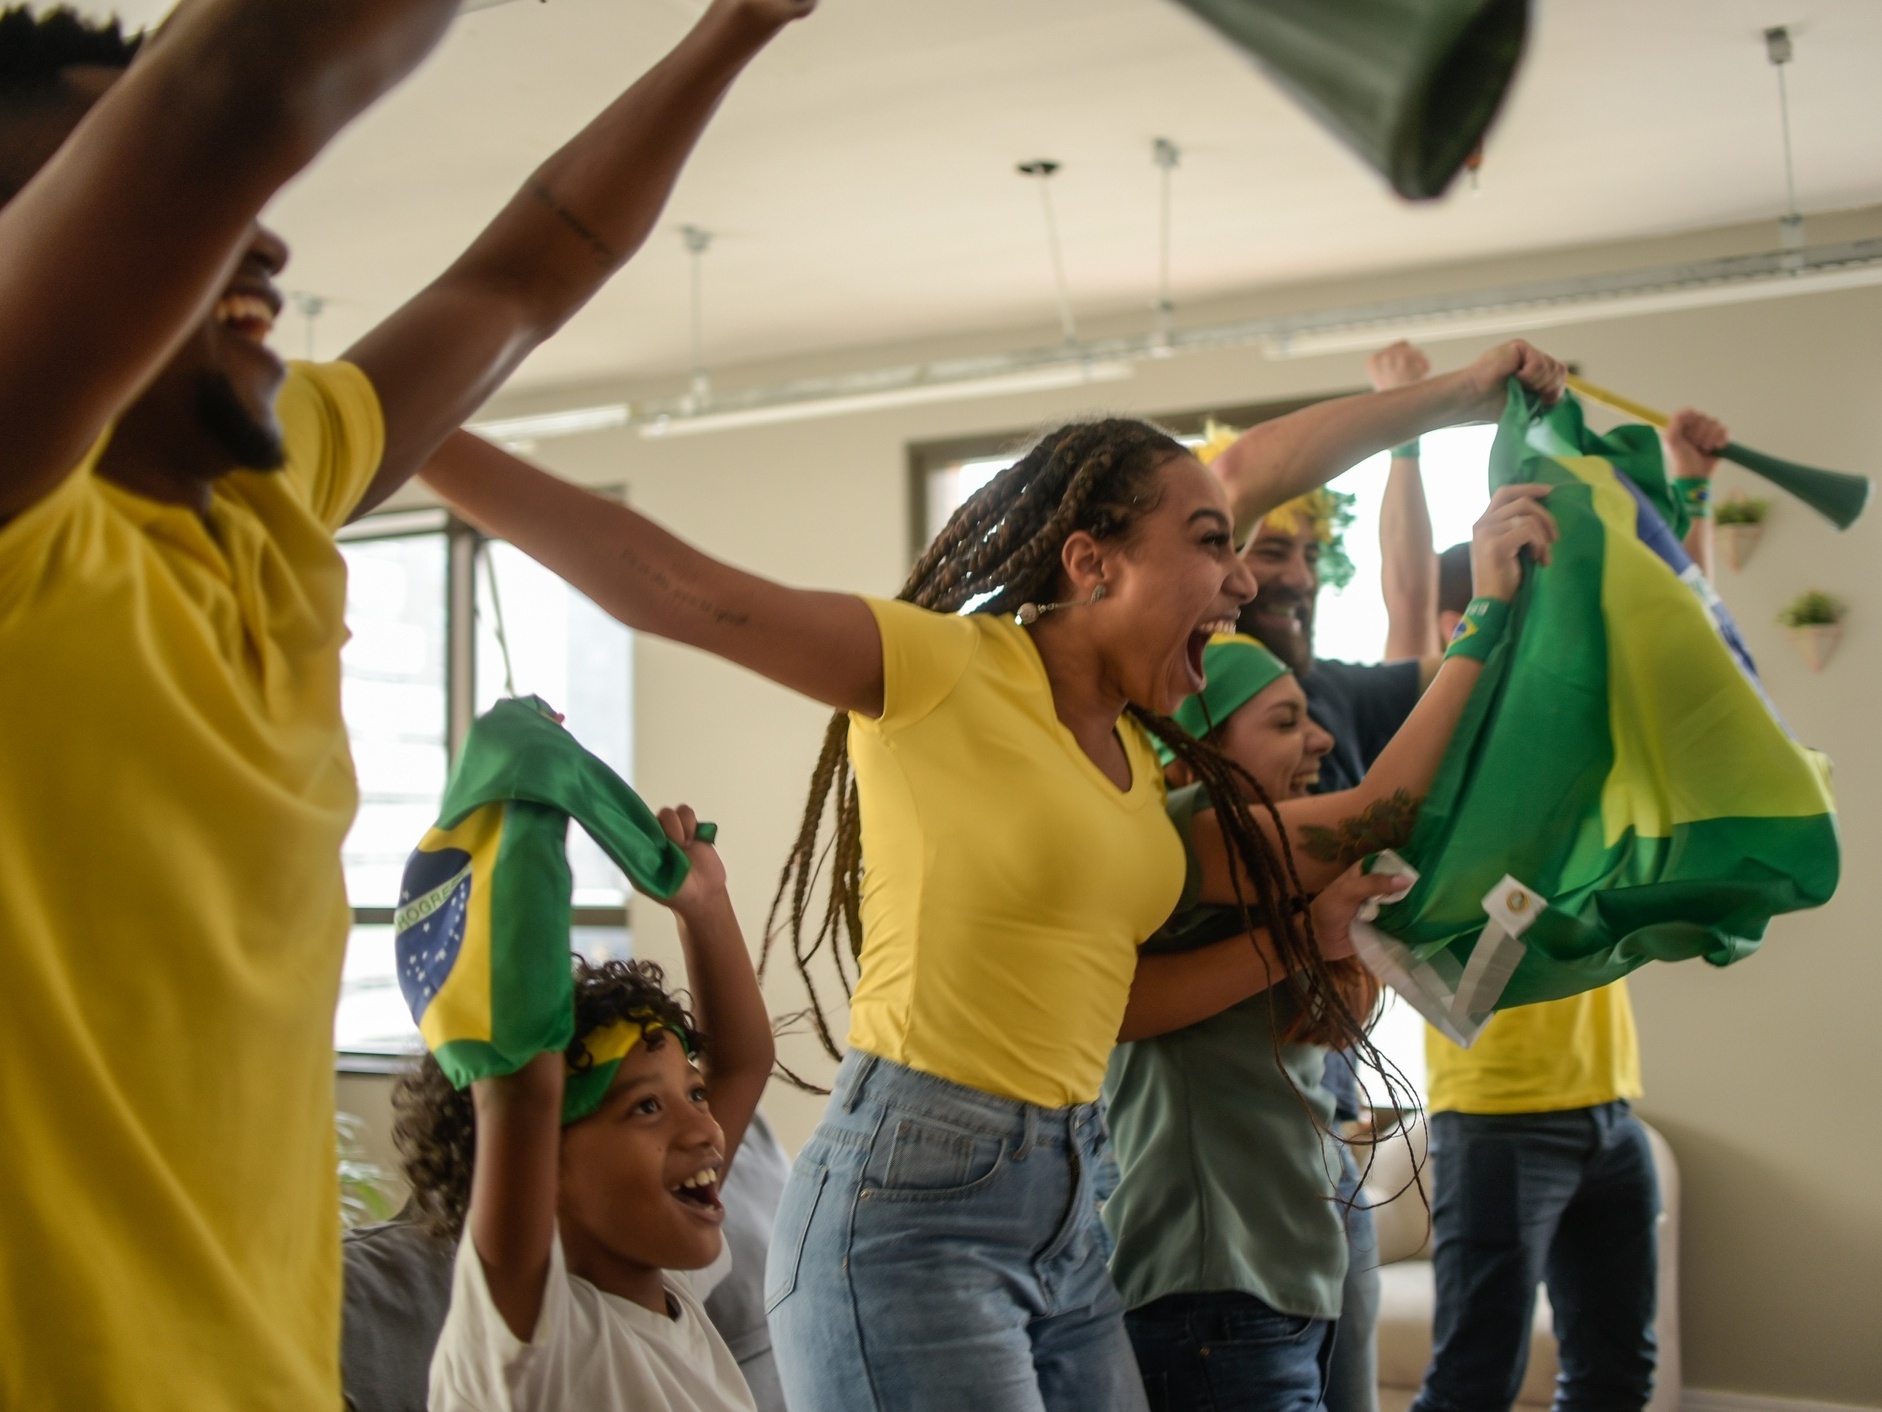 https://conteudo.imguol.com.br/c/noticias/4c/2022/11/11/torcedores-brasileiros-vestidos-de-amarelo-celebrando-gol-copa-do-mundo-1668182557785_v2_4x3.jpg